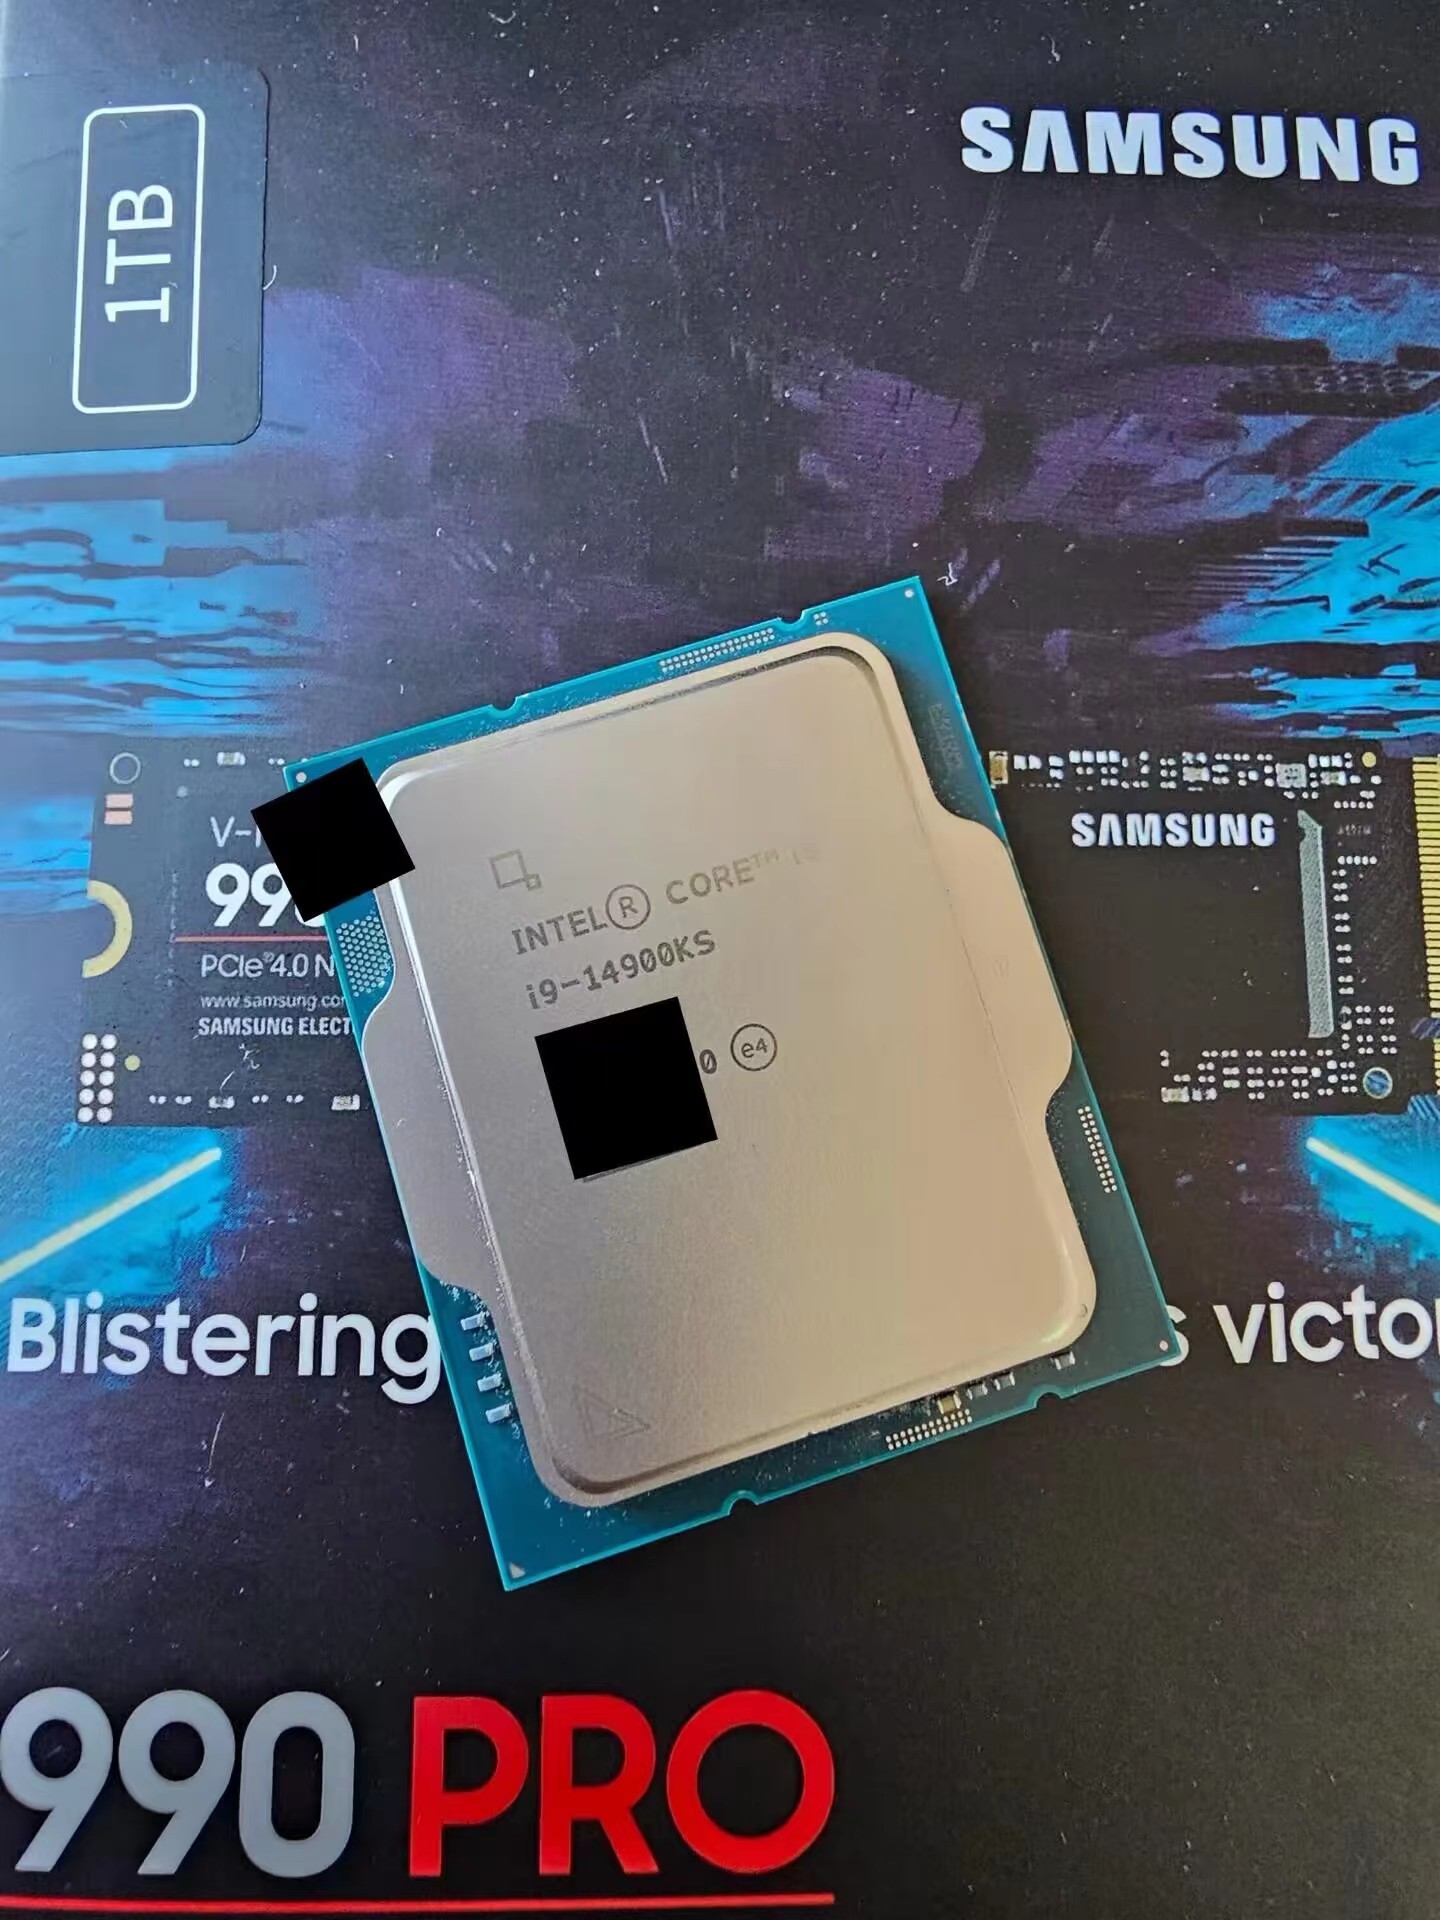 Intel Core i9-14900KSとされる写真